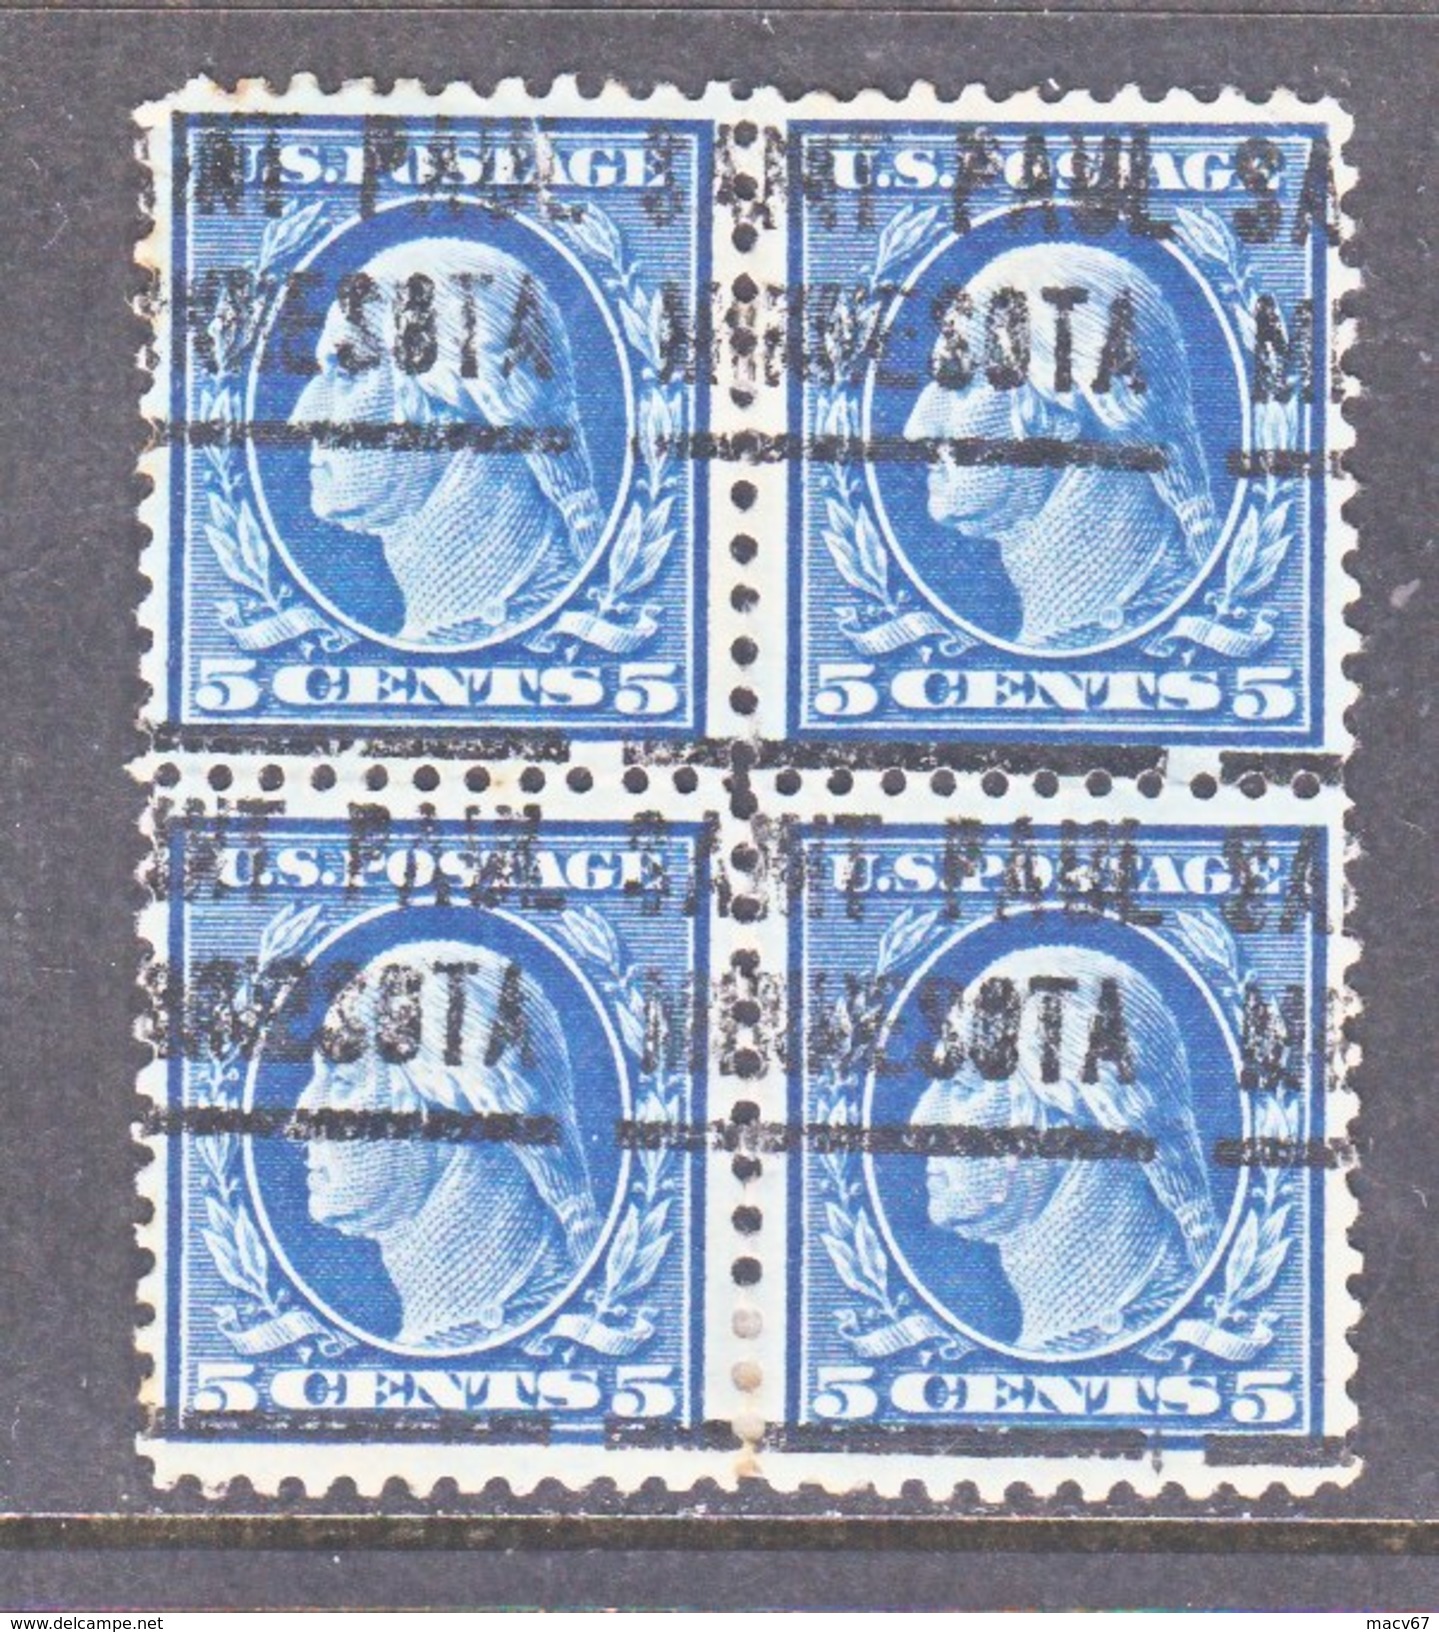 U.S. 504 X 4  (o)  MINNESOTA  FLAT PRESS  NO Wmk. Perf 11  1917-19 Issue - Precancels